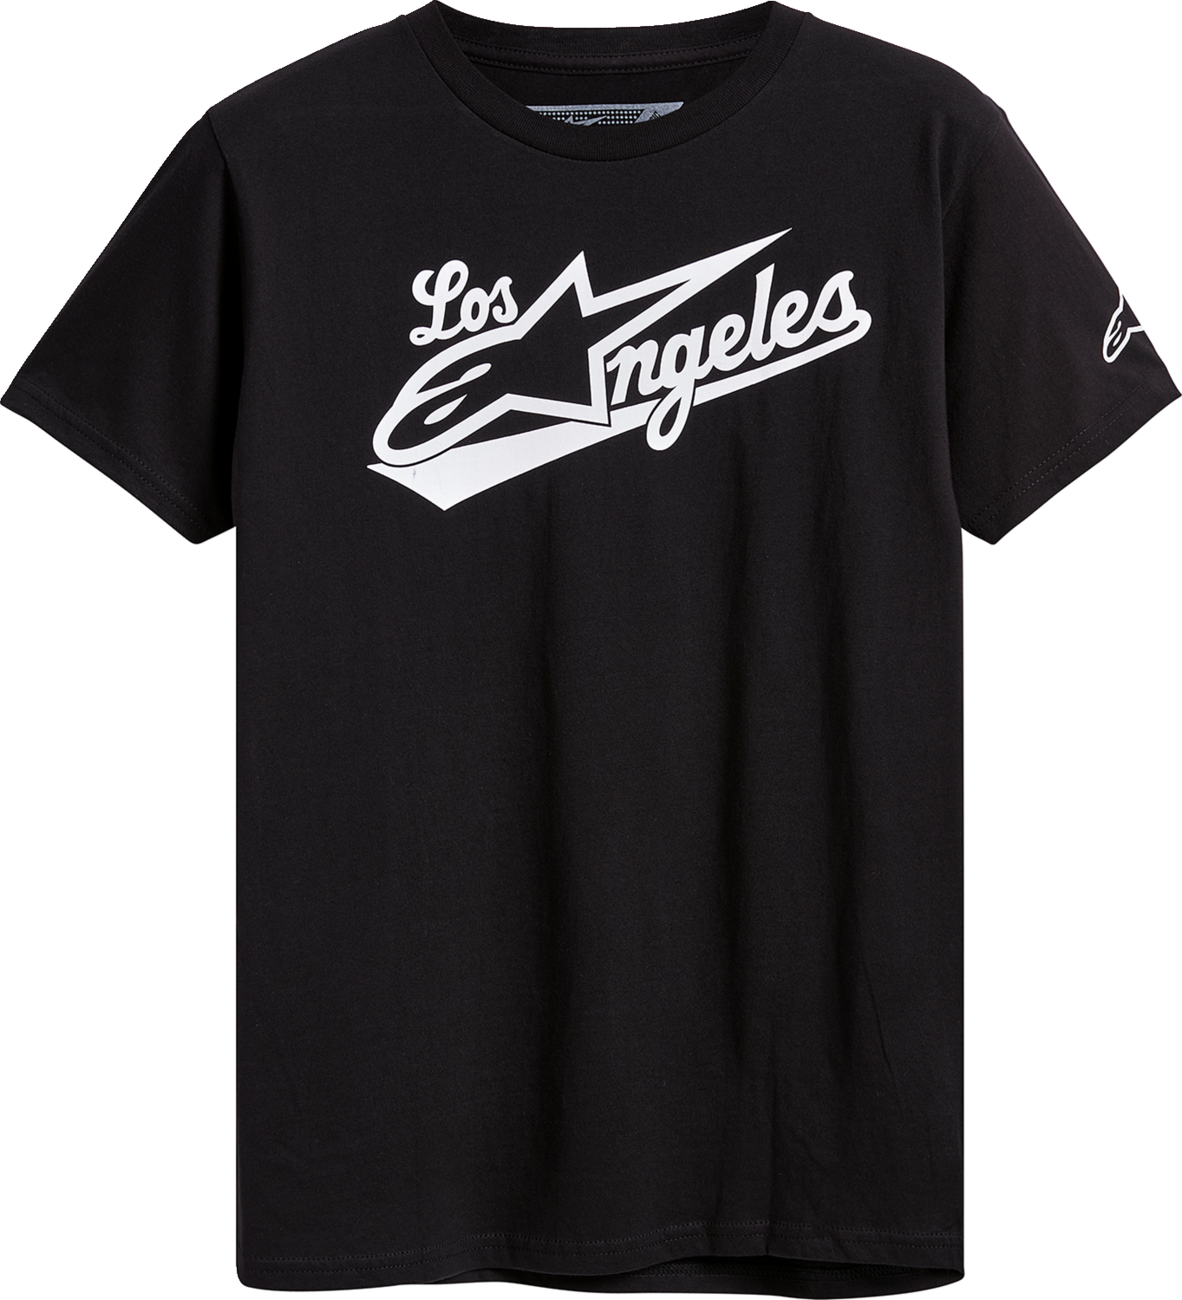 ALPINESTARS Los Angeles T-Shirt - Black - Medium 12337222010M